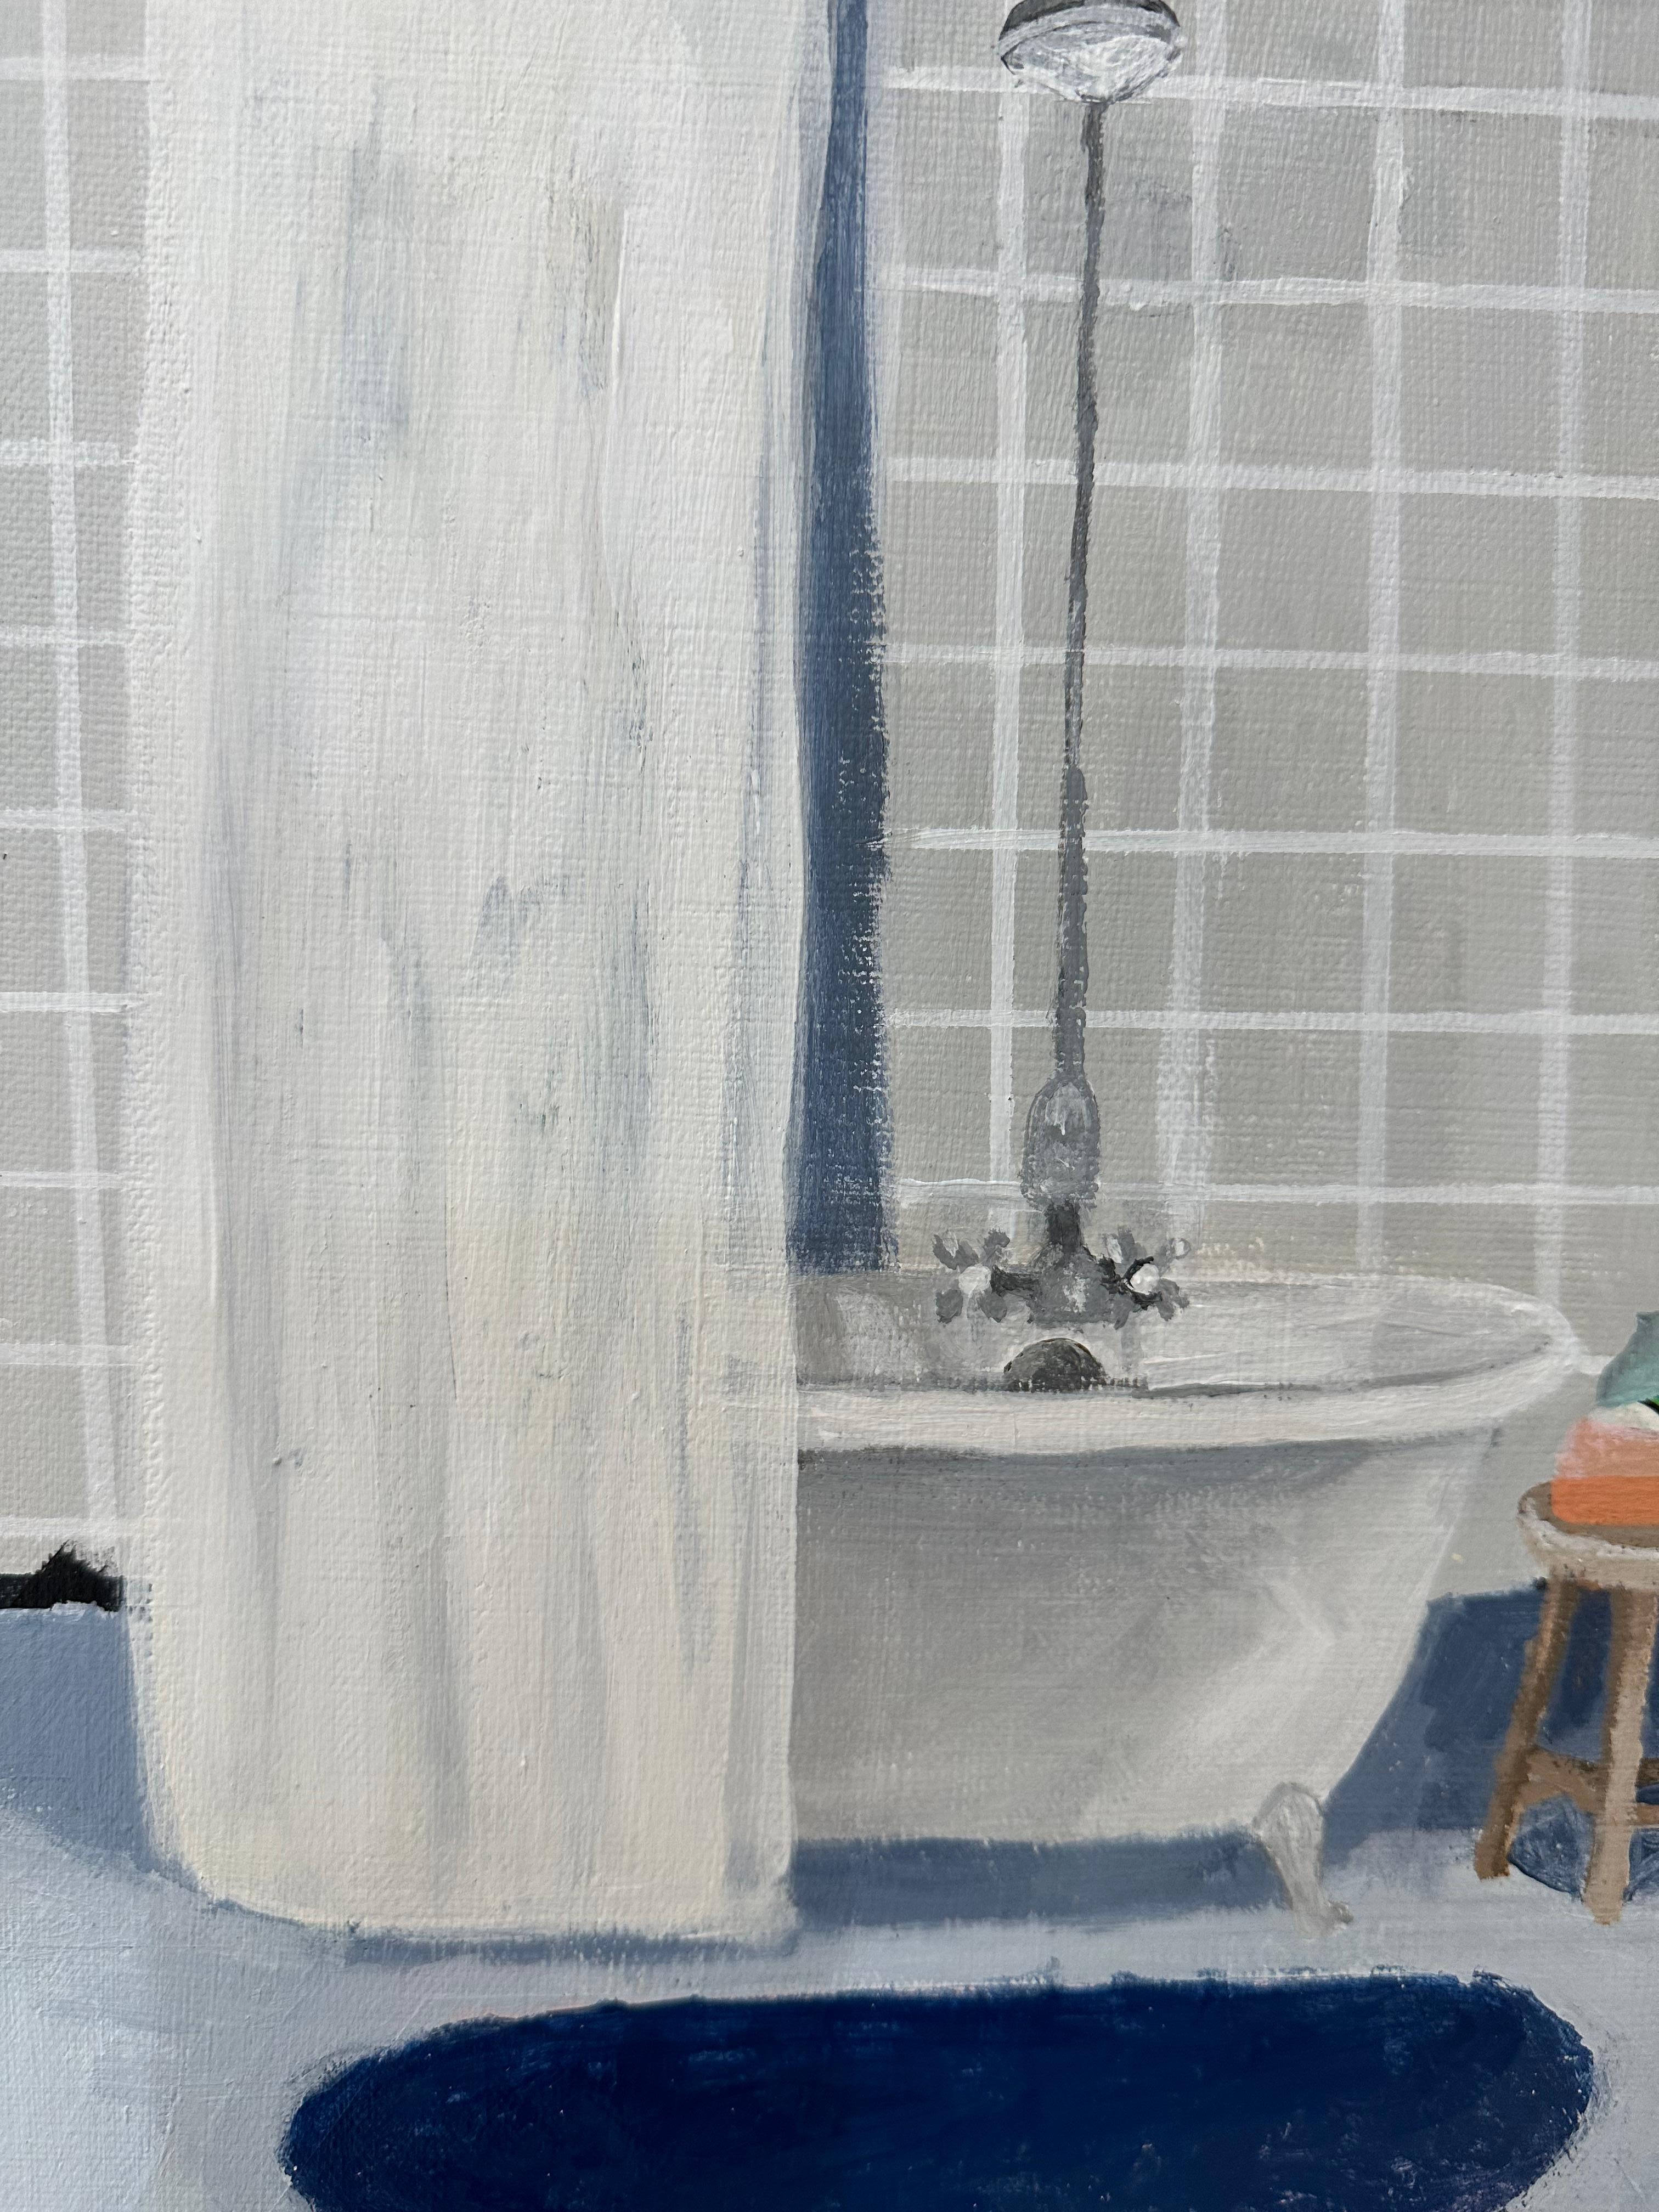 Graues Kachel-Bad, Badezimmer innen mit Kacheln, grüner Seife, kobaltblauer Teppich (Zeitgenössisch), Painting, von Polly Shindler